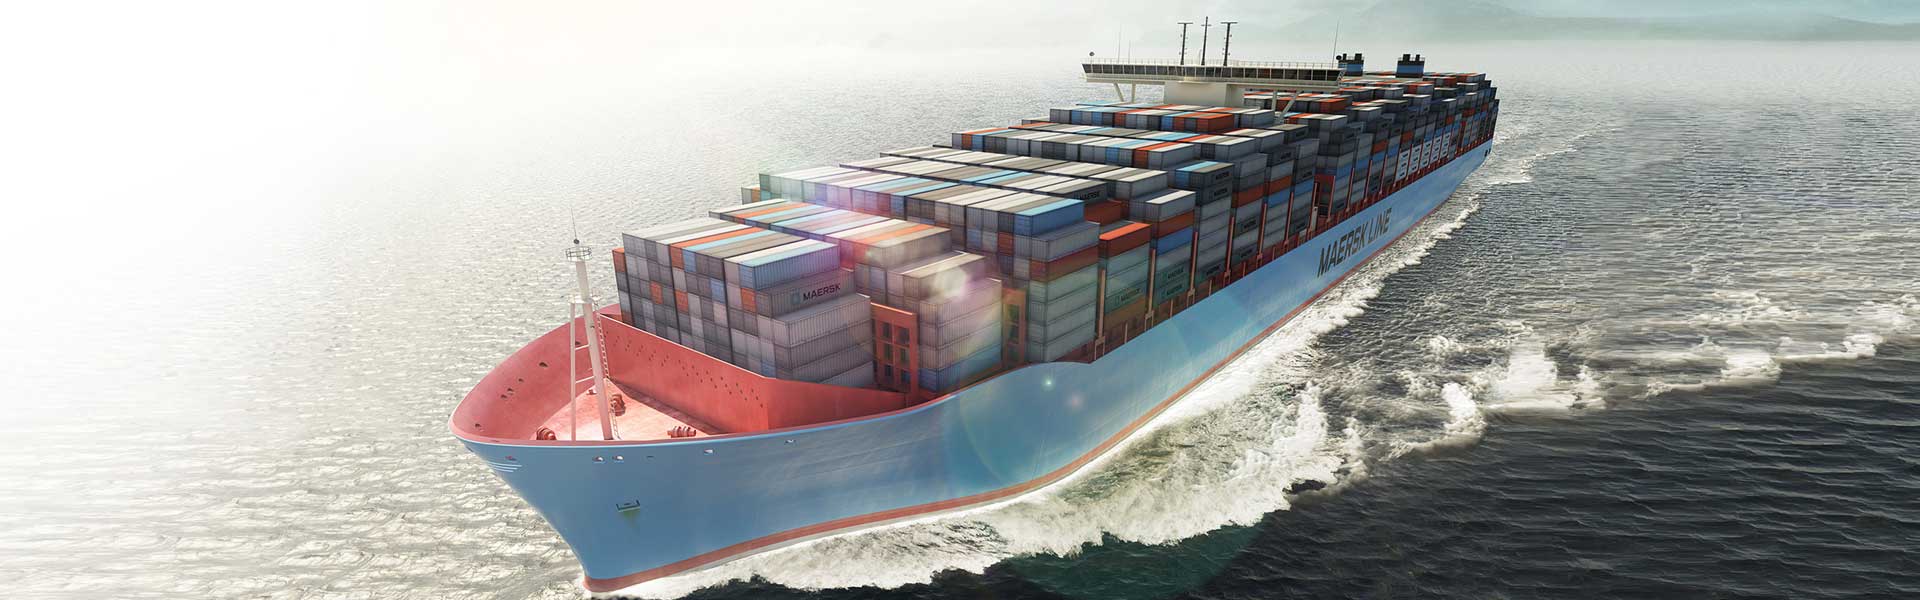 Maersk Container Industry postawiło na termoizolację poliuretanem